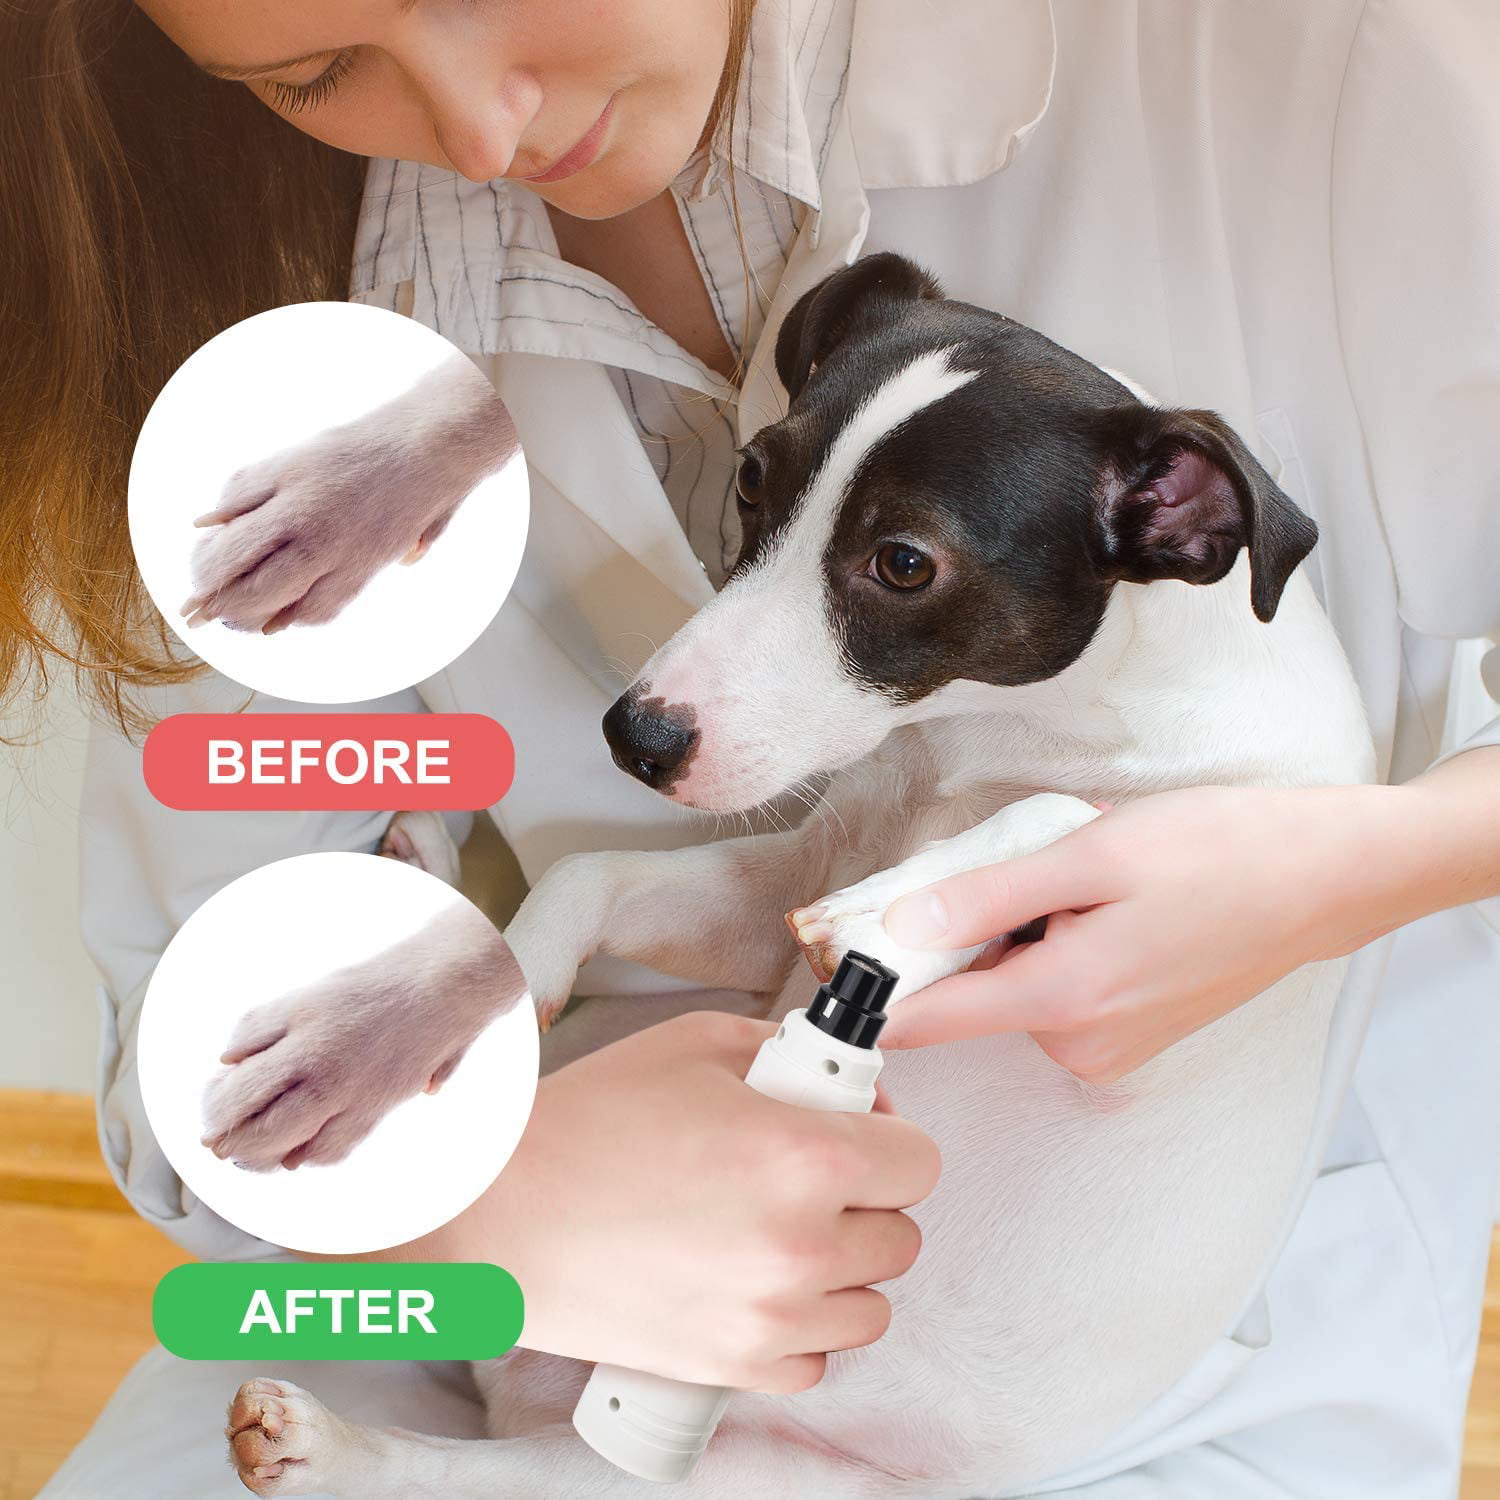 8775円 お得なキャンペーンを実施中 新品 Casfuy Dog Nail Grinder with LED Light - Upgraded 2-Speed Electric Pet Trimmer Powerful Painless Paws Grooming Smoothing